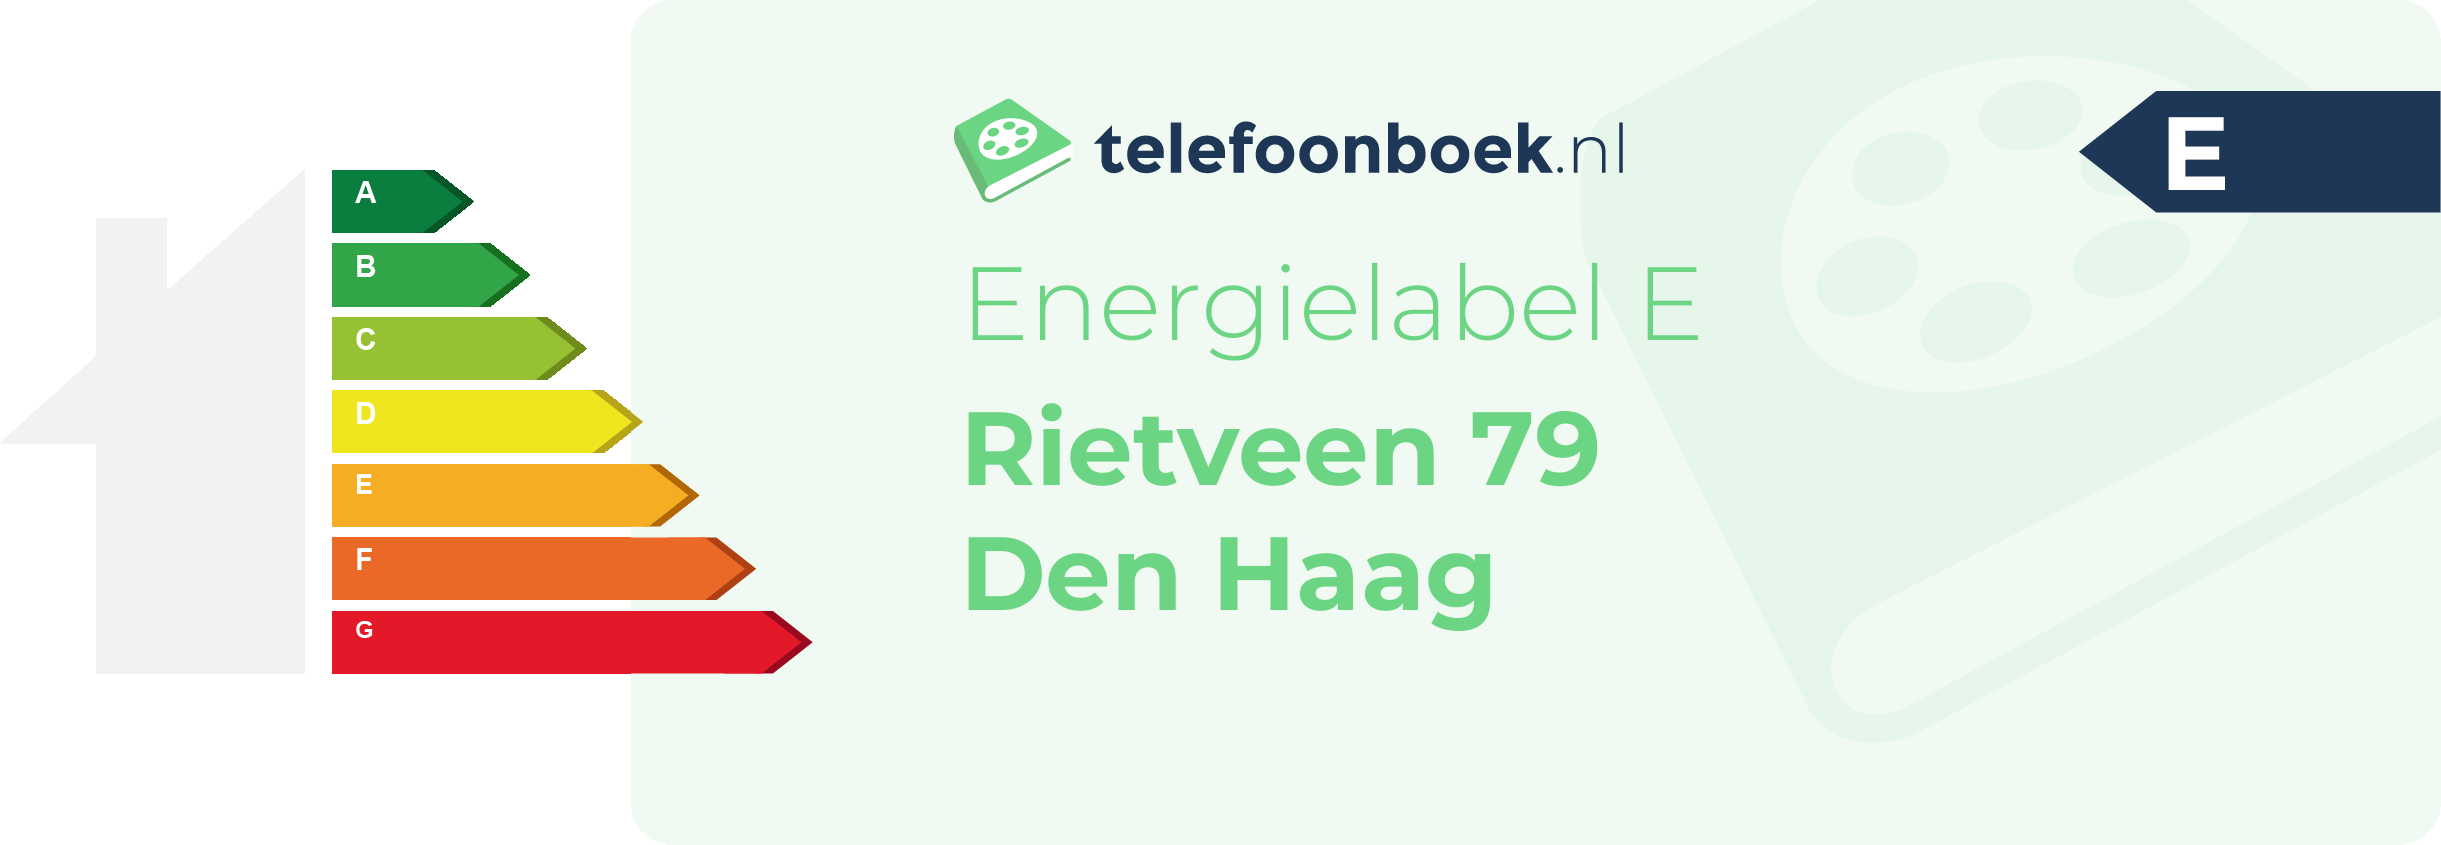 Energielabel Rietveen 79 Den Haag